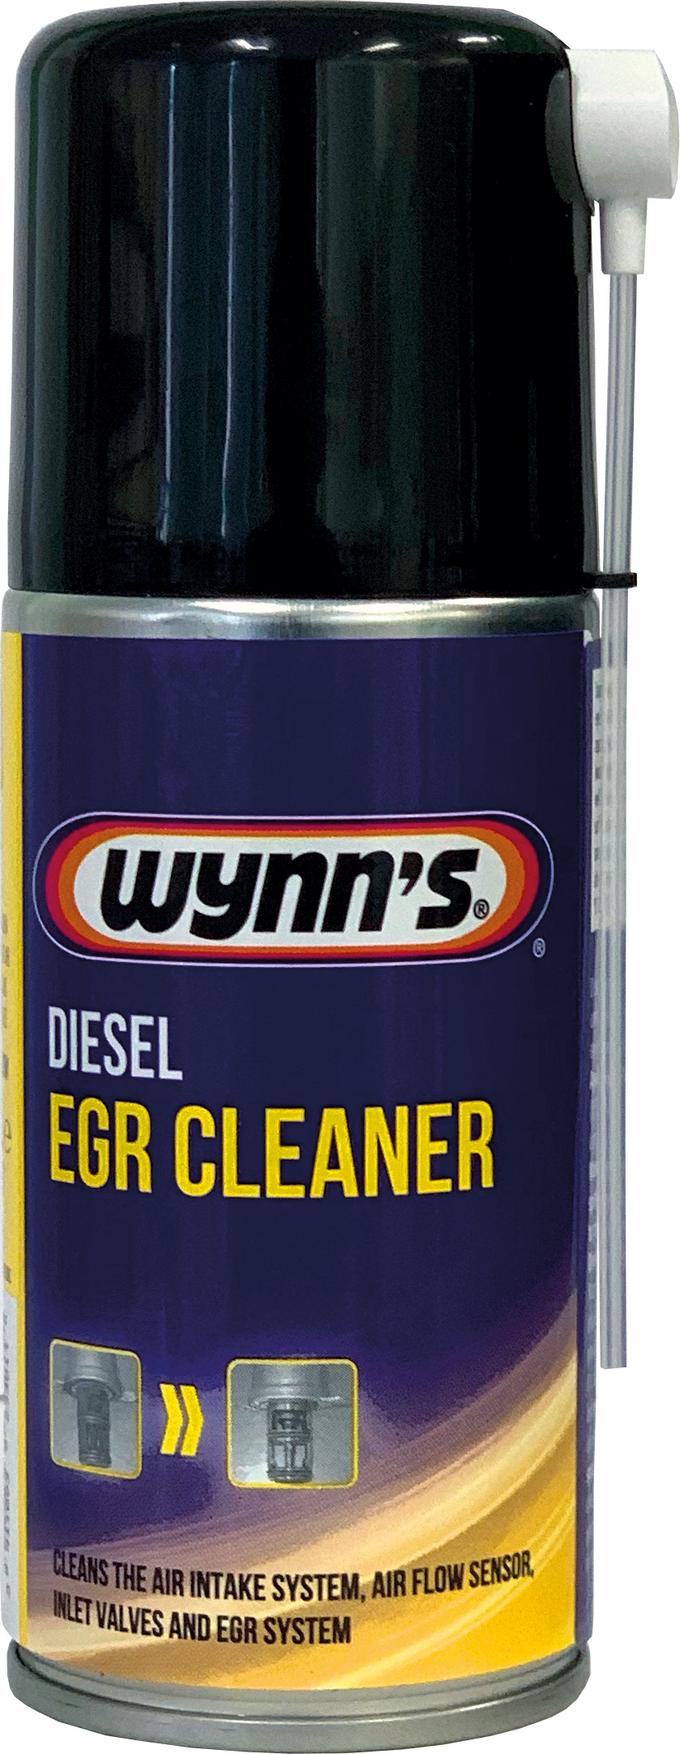 Wynns Diesel Turbo Cleaner